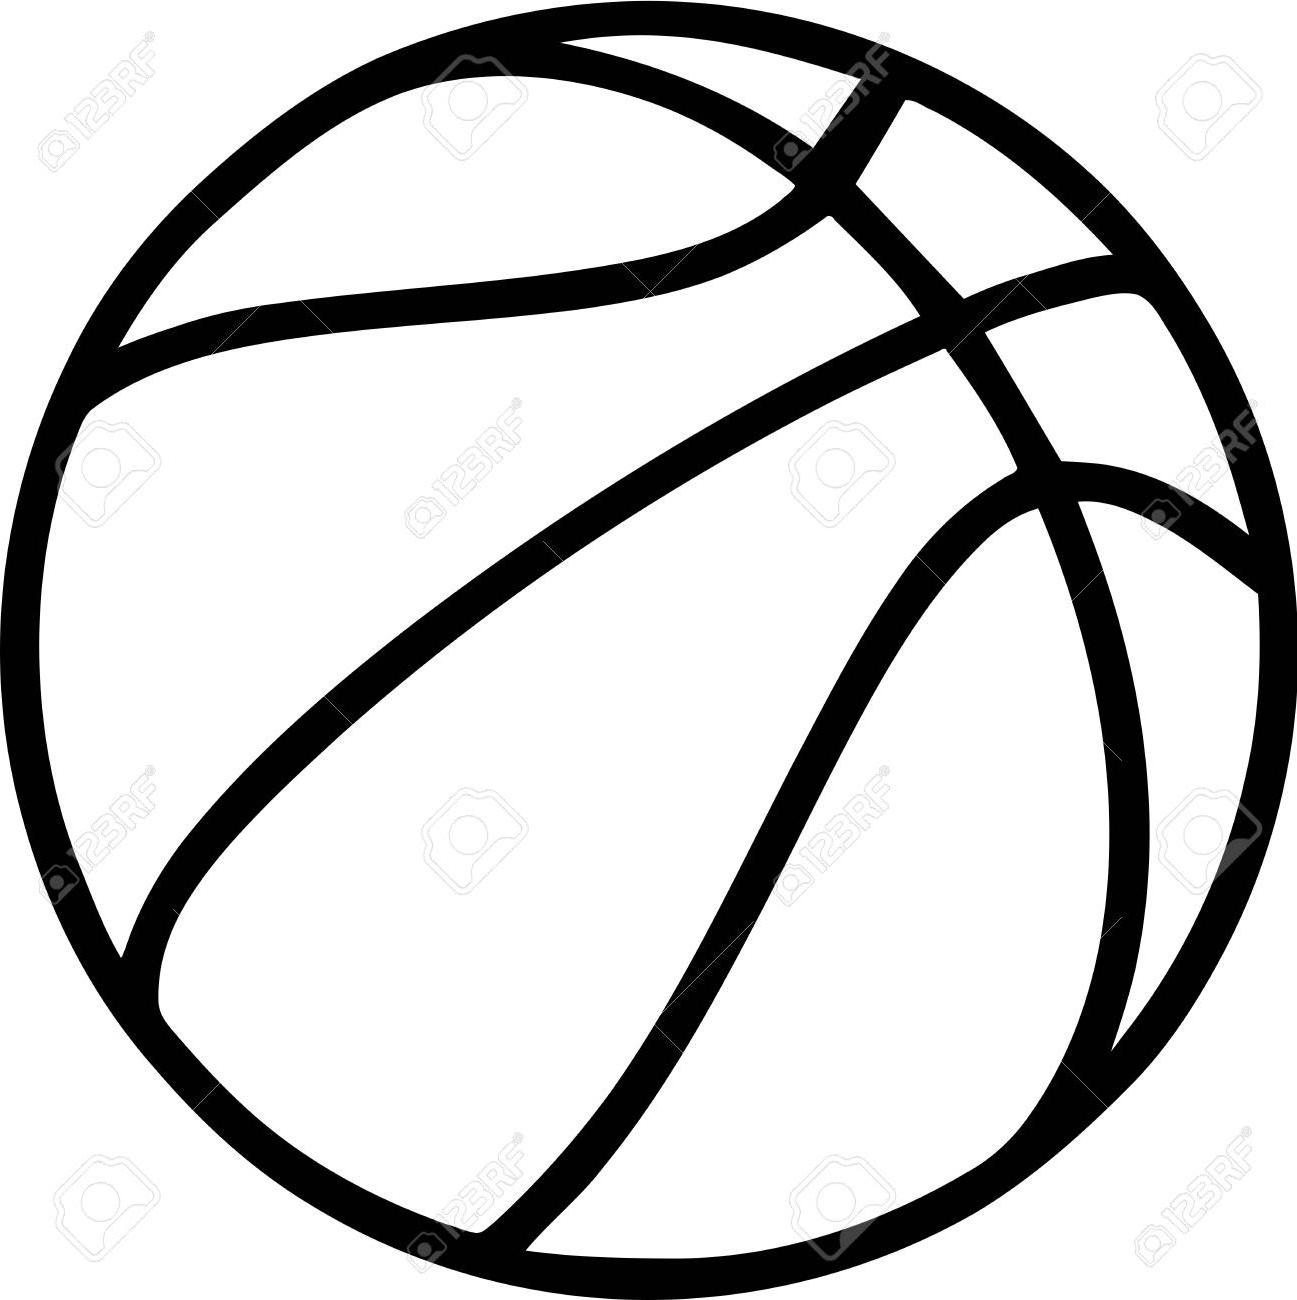 27-images-of-printable-basketball-template-infovia-basketball-drawing